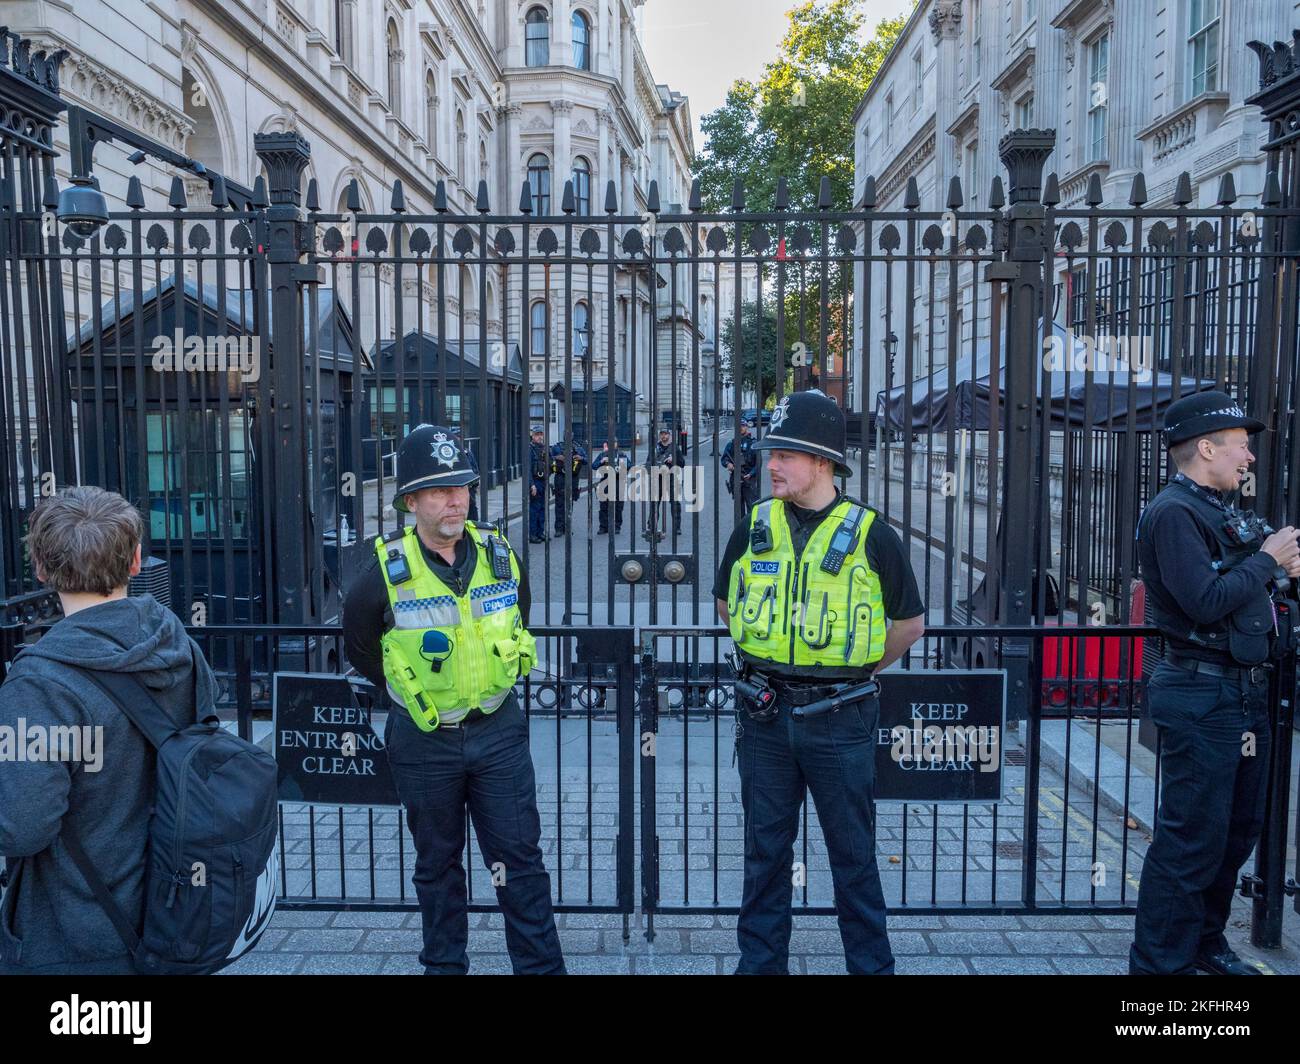 Las puertas de entrada fuertemente custodiadas a Downing Street, la casa londinense del Primer Ministro británico, Whitehall, Londres. Foto de stock